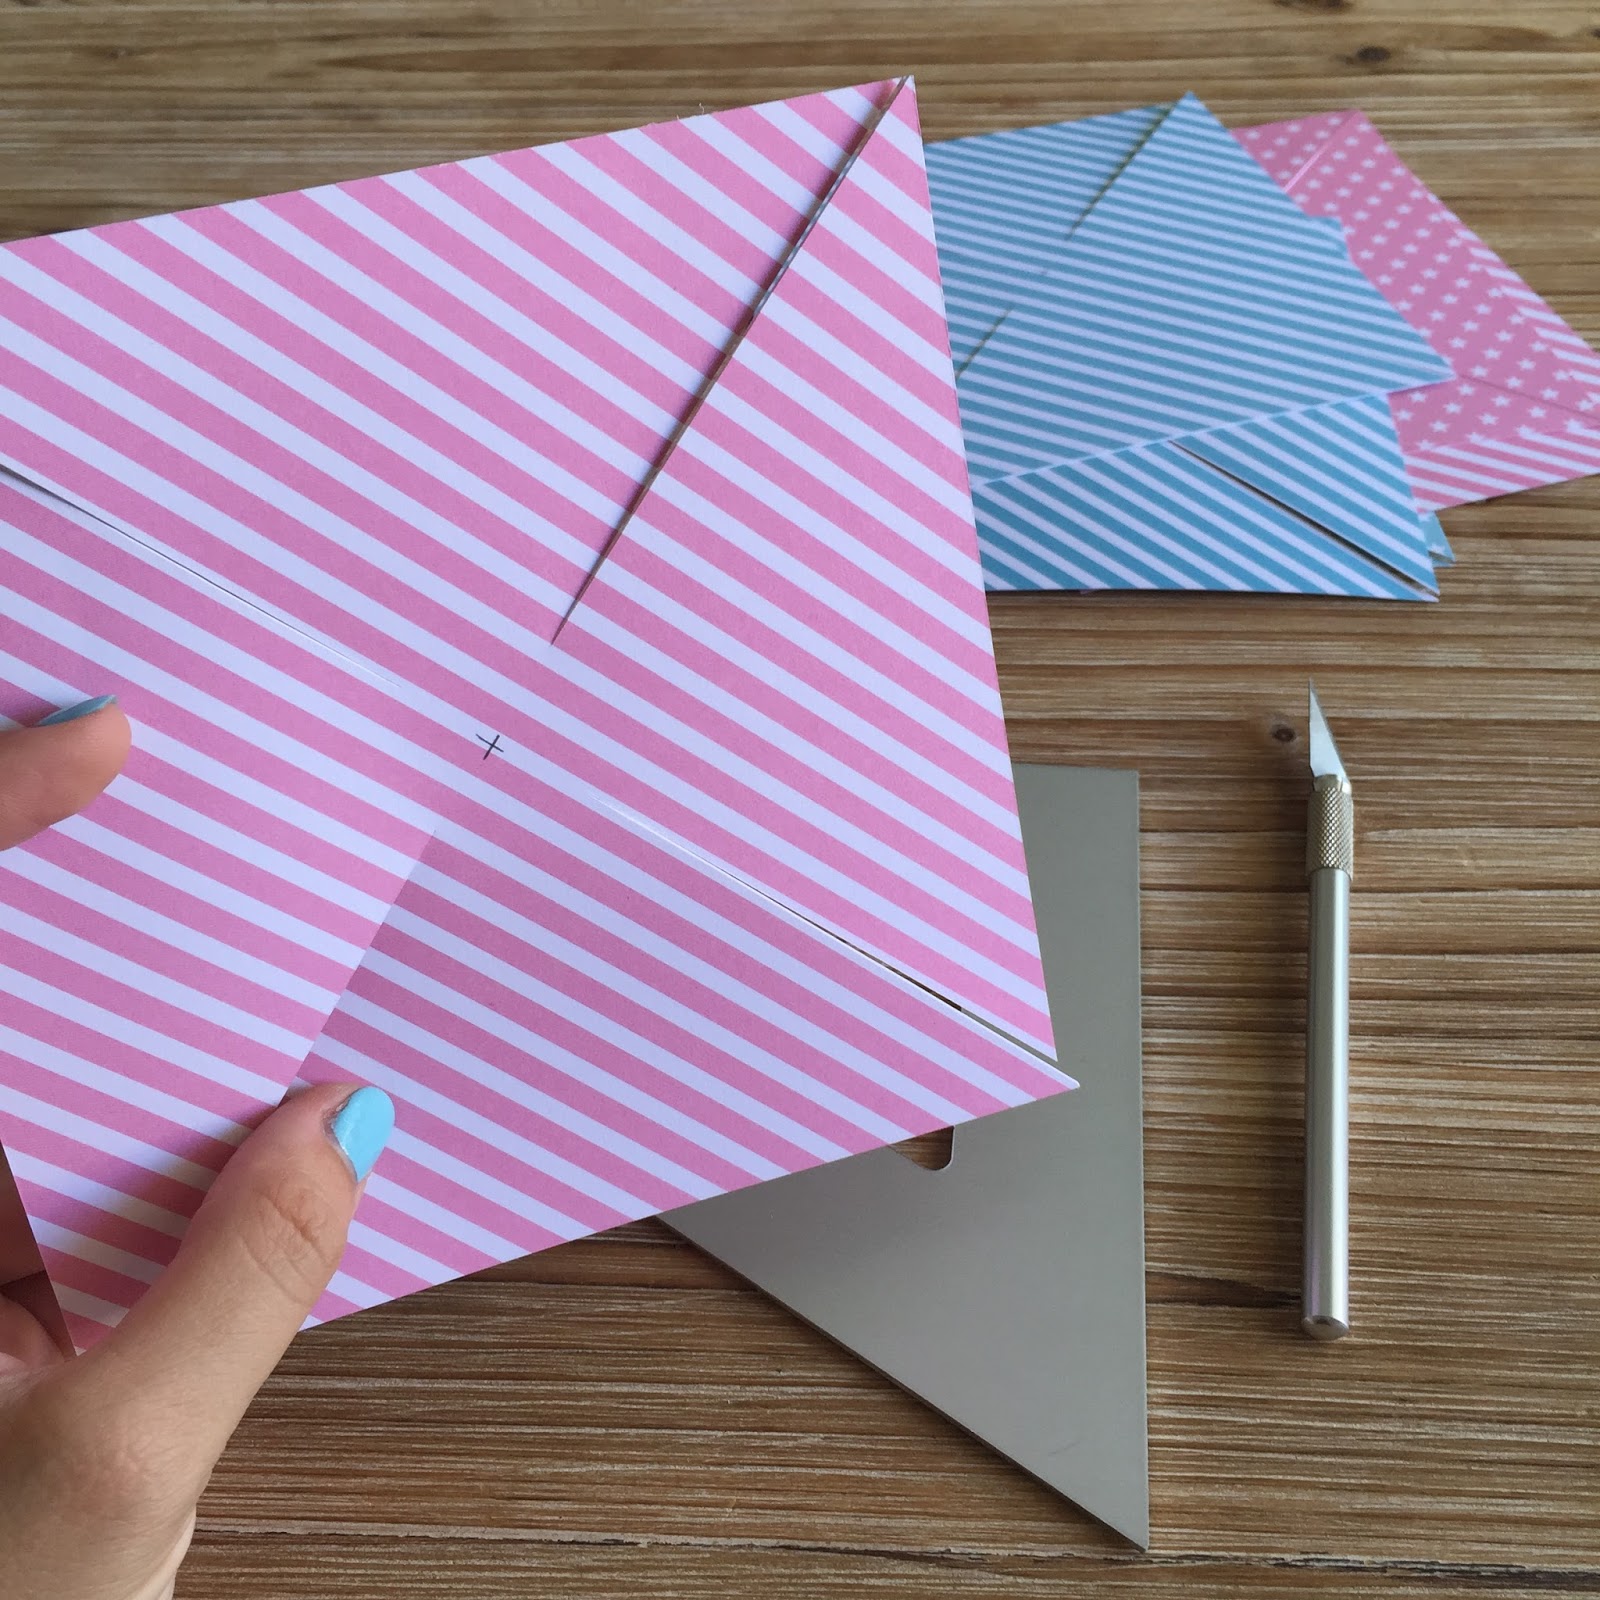 Enveloppe Moulin à Vent en origami